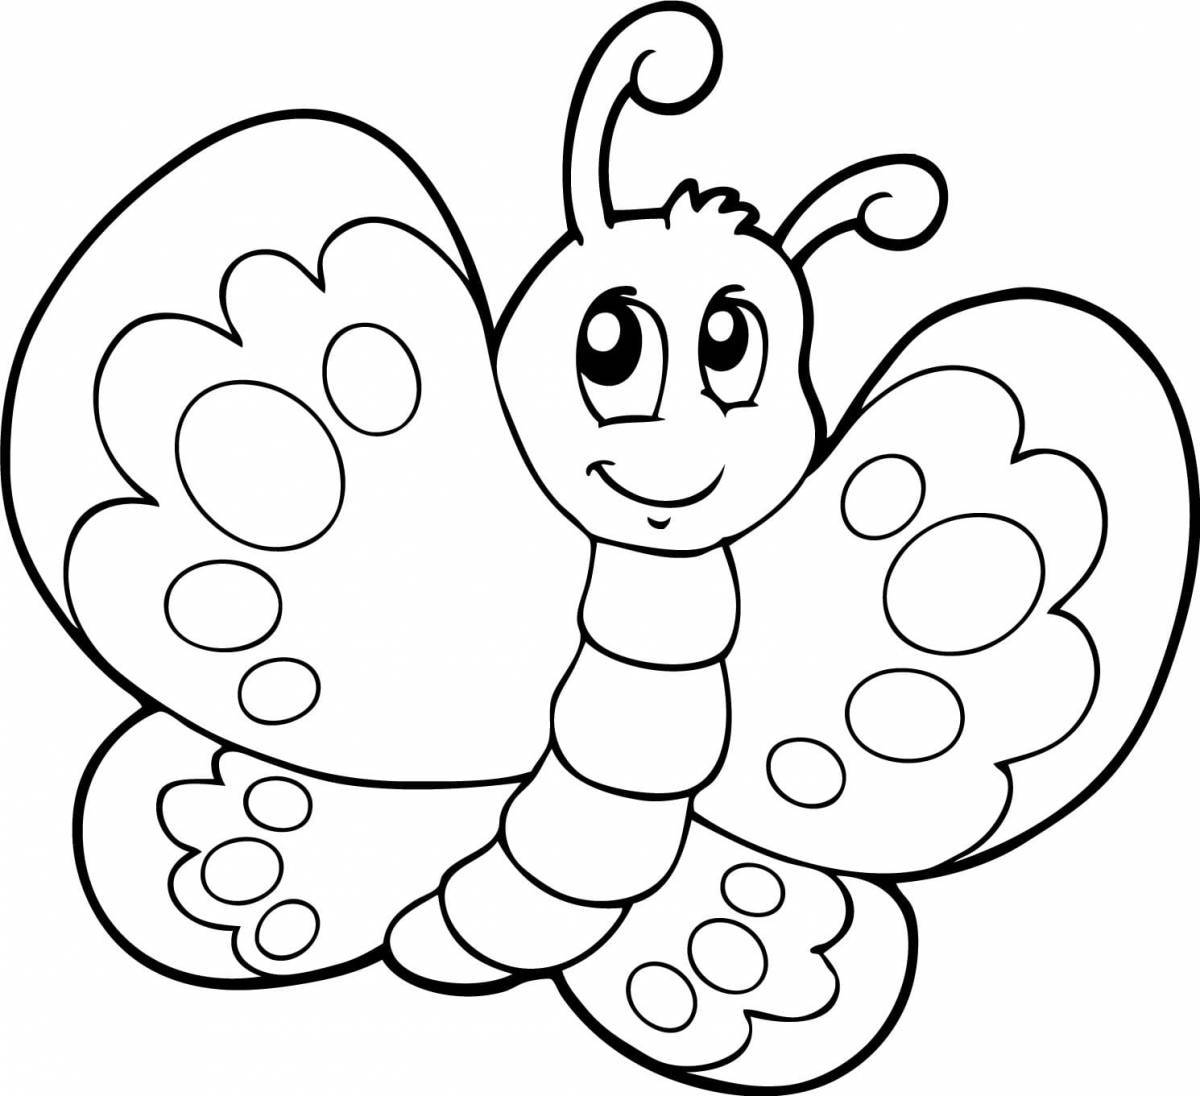 Увлекательная раскраска бабочки для детей 3-4 лет